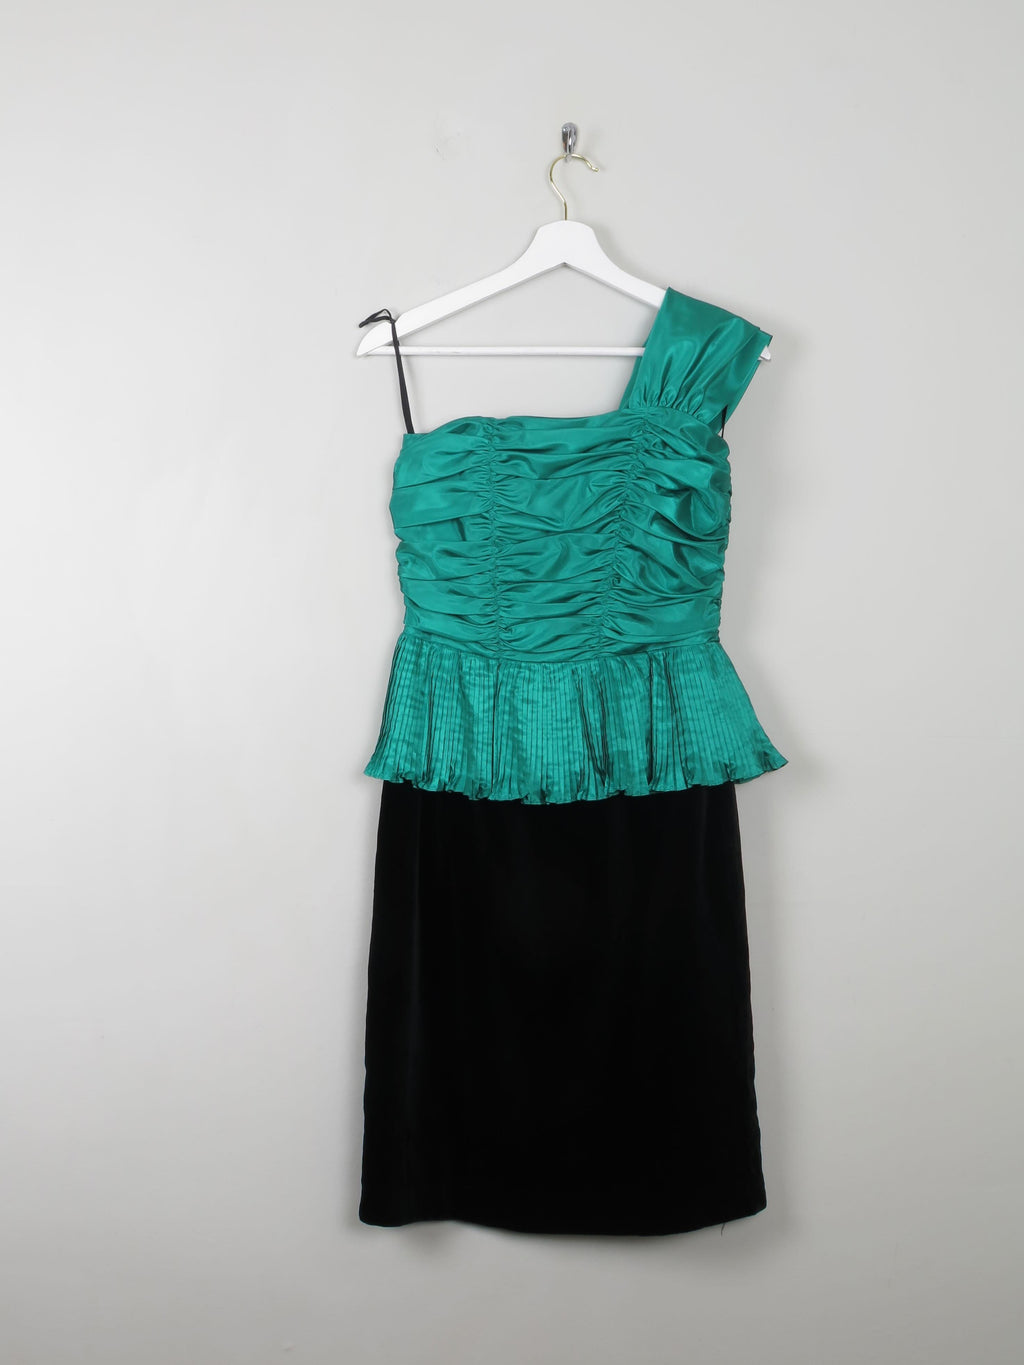 Vintage Green & Black Dress One Shoulder XS - The Harlequin